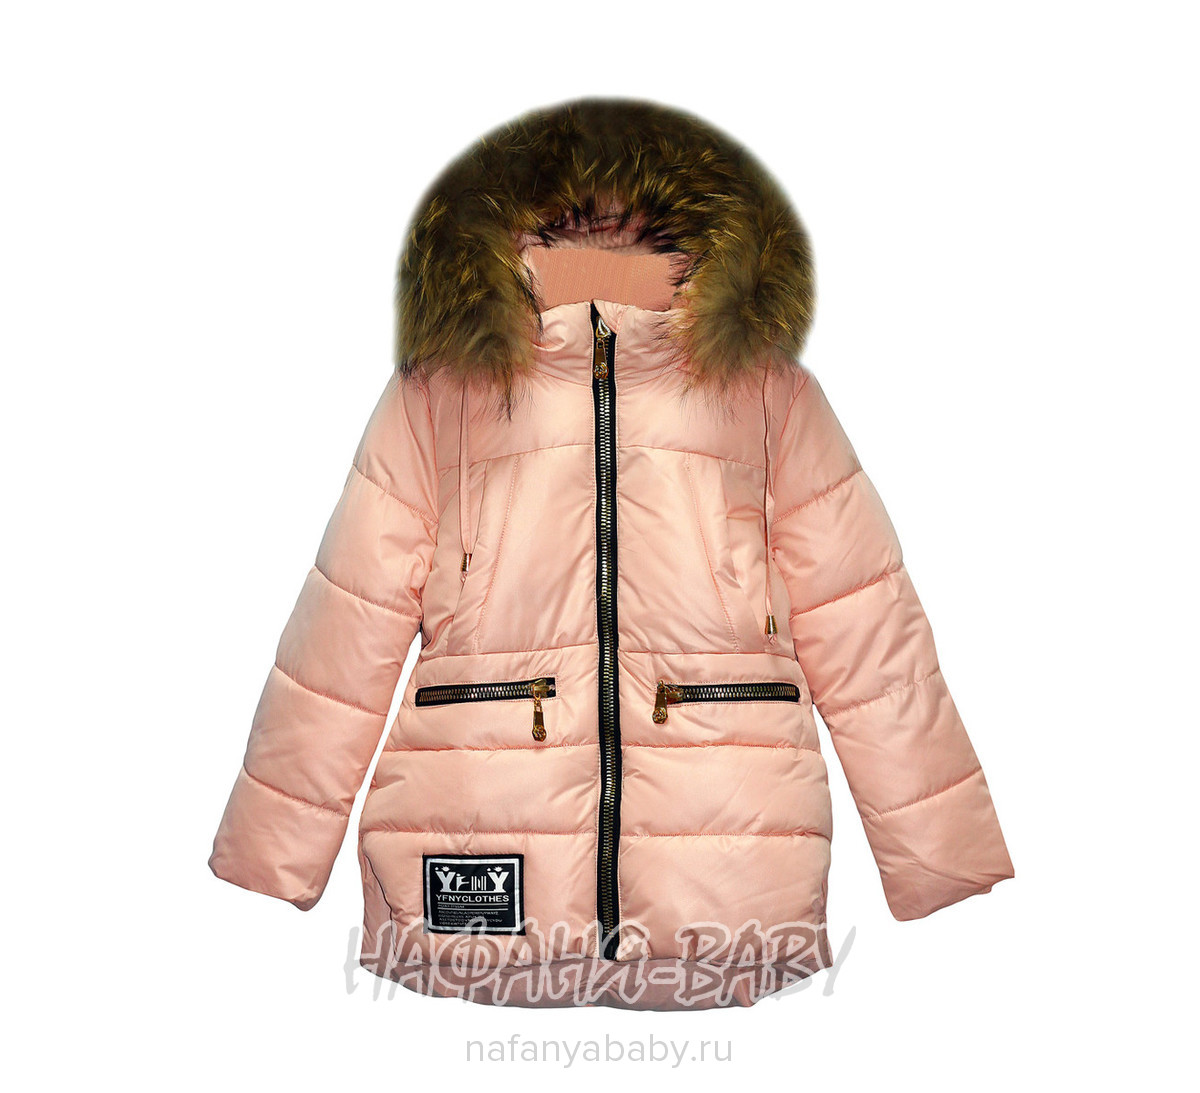 Детская зимняя куртка для девочки YFNY, купить в интернет магазине Нафаня. арт: 3178.